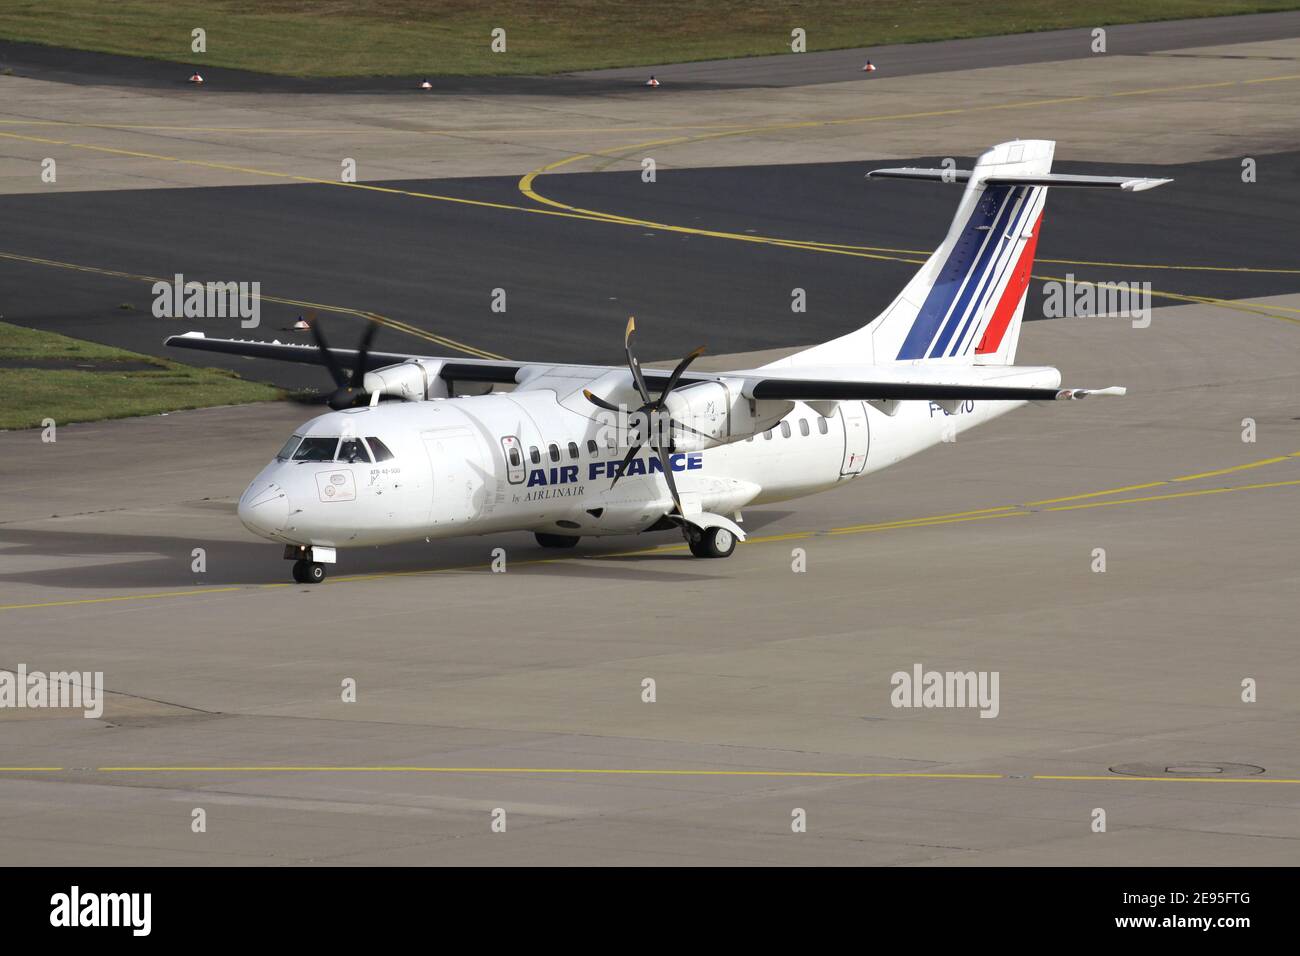 Airlinair ATR-42 in Air France livrea con registrazione F-GPYO all'aeroporto di Colonia Bonn. Foto Stock